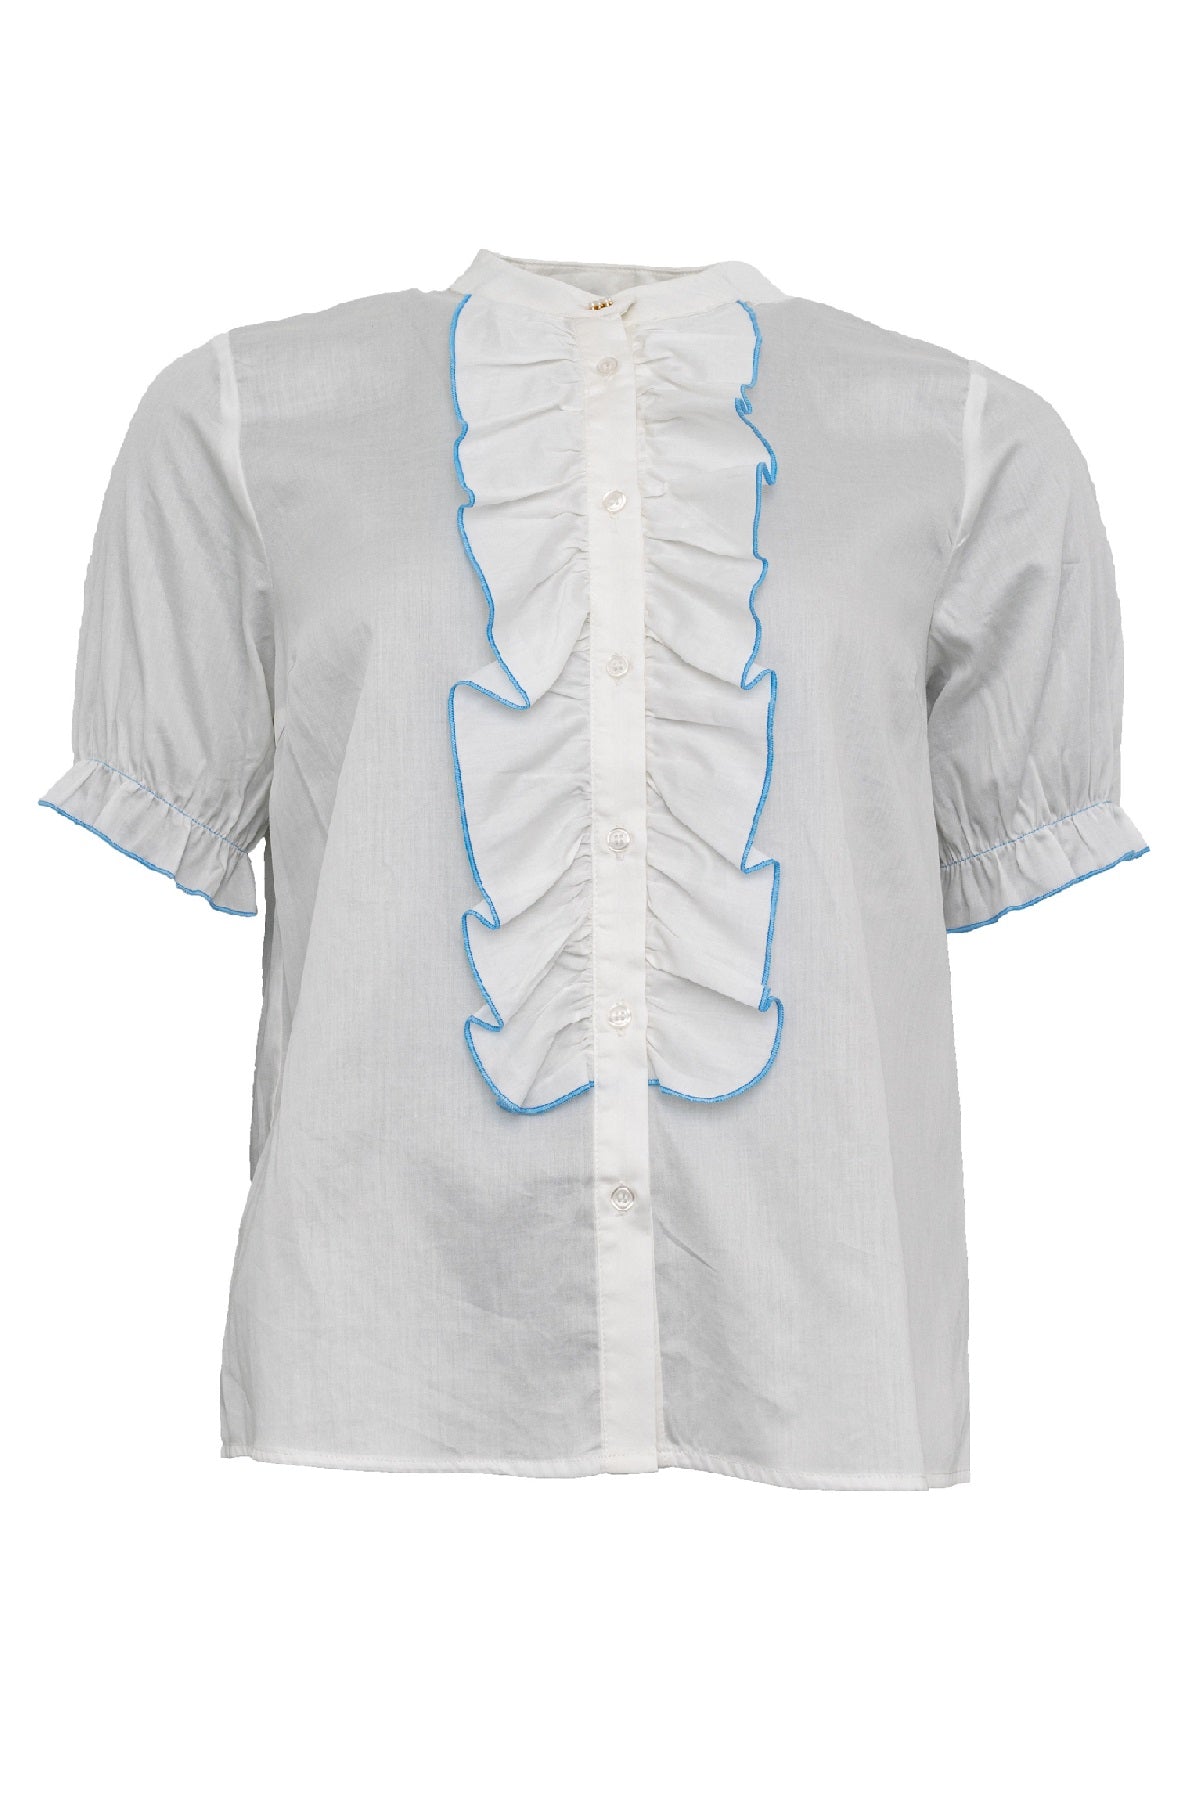 Costamani Frill shirt, White w/Blue